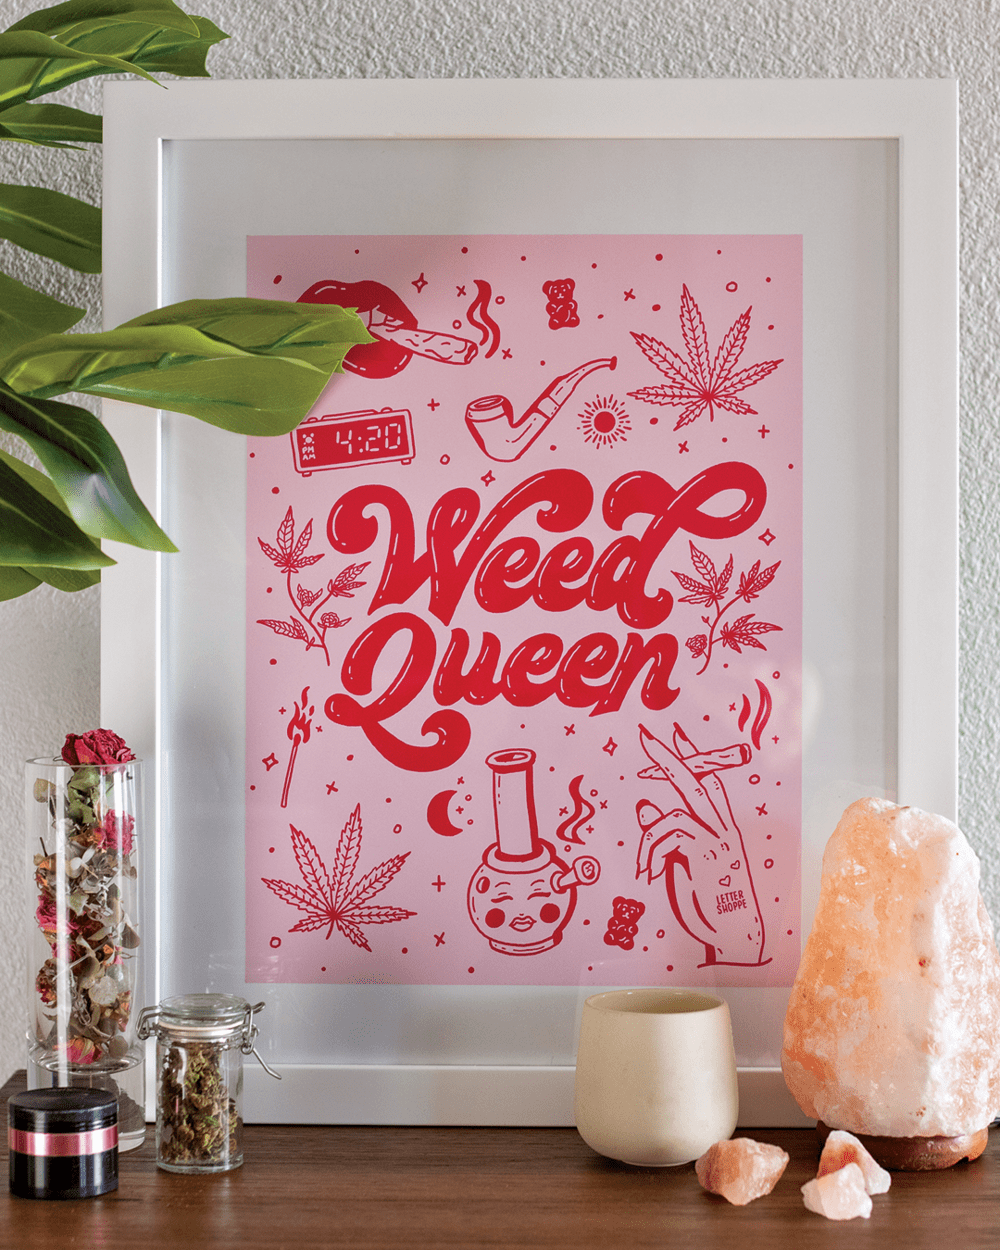 Weed Queen Poster